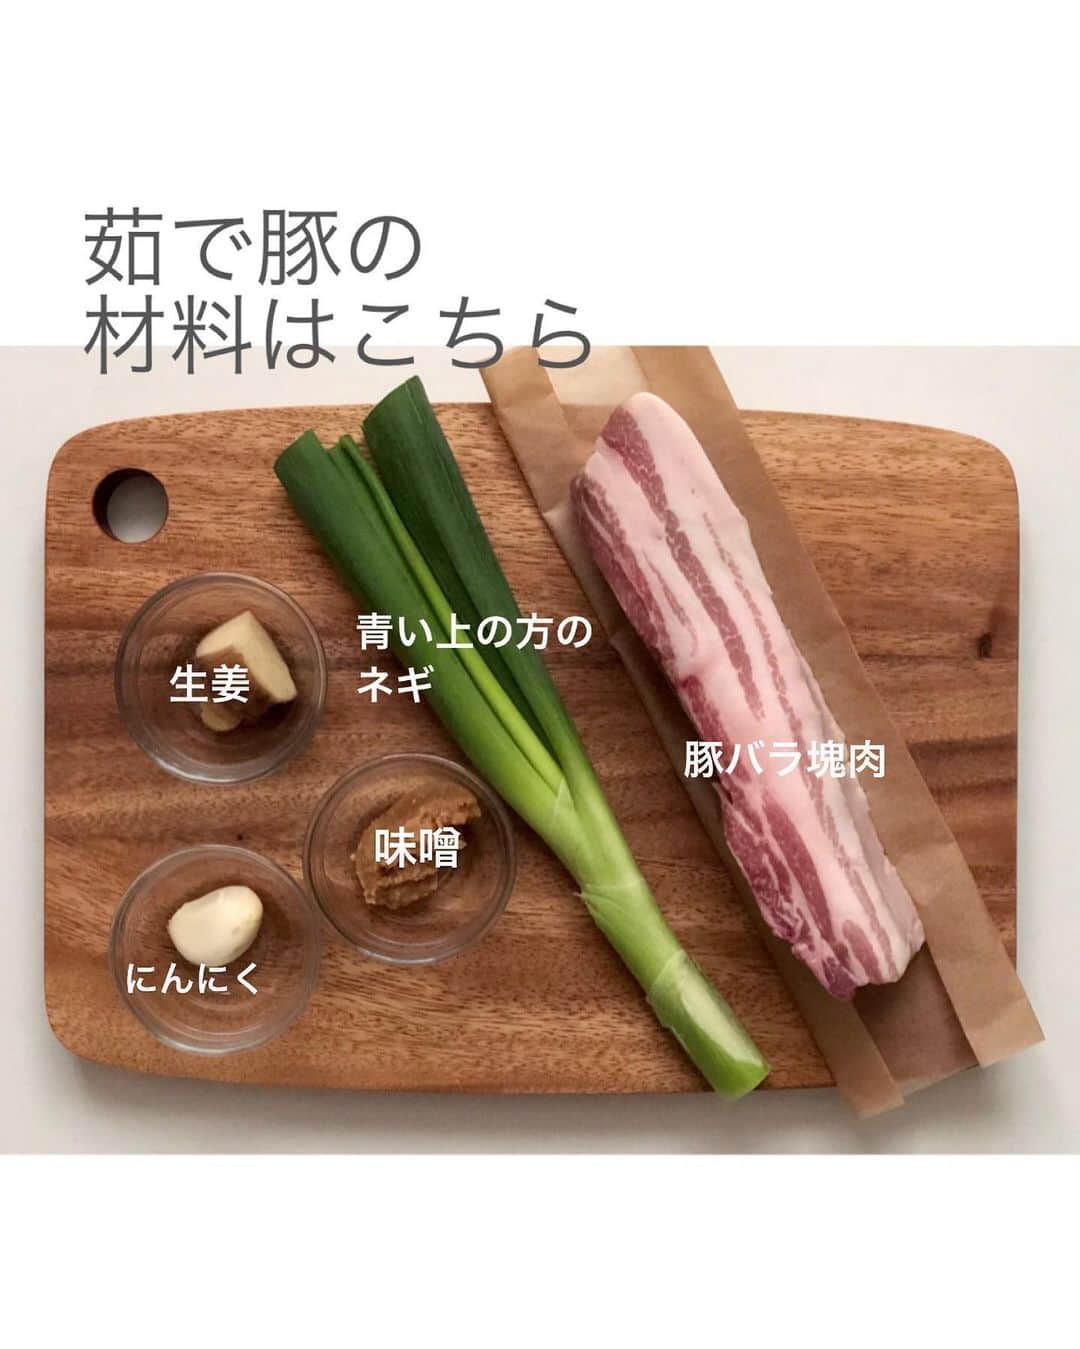 utoshさんのインスタグラム写真 - (utoshInstagram)「【レシピ画像付き】基本のポッサムと、茹で汁スープ。﻿ ﻿ 実は簡単に作れて、残った汁で作るスープがこれまた別格な韓国の茹で豚「ポッサム」を作ります！﻿ ﻿ 調味料さえ合わせてしまえば、料理自体はすごく簡単です。﻿ オーブン料理みたいにポッサムを作りながら他の料理も作れるし、作り立てじゃなくても美味しいので、品数多く作る時にも便利だし、オススメですよ。﻿ ﻿ とにかくこのスープがニンニクと生姜と豚肉の出汁が効いてて美味しい。ラーメンのスープってこうやって作ってるんだろうなっていう奥深い味になっています。﻿ これを一度飲んだらポッサムとスープのセットはやめられないはず！﻿ ぜひ作ってみてくださいね！﻿ ﻿ ✔️〈この料理のポイント〉﻿ ・生のにんにくと生姜を鍋に入れる用とタレ用に2セット用意する。﻿ ・メインとスープが両方一度に作る事ができるのが便利。﻿ ﻿ ﻿ レシピはこちら↓﻿ ＿＿＿＿＿﻿ ﻿ 基本のポッサムと、茹で汁スープ（2人分）﻿ ﻿ 〈材料〉﻿ 豚かたまり肉 500g﻿ 水 1.5リットルくらい﻿ ﻿ ﻿ A（鍋に入れる材料）﻿ 長ねぎ 1/2（青い方全部）﻿ にんにく 1片﻿ 生姜 1片﻿ 味噌 大さじ1﻿ ﻿ ﻿ B（タレ）﻿ コチュジャン 大さじ2﻿ 酢 大さじ2﻿ 砂糖 大さじ2﻿ 豆板醤 小さじ1/2﻿ すりおろし生姜 小さじ2﻿ すりおろしにんにく 小さじ1/2（入れなくてもいい）﻿ ﻿ ﻿ 〈付け合わせ〉﻿ サンチュ 4〜5枚（適量）﻿ エゴマの葉 4〜5枚（適量）﻿ ﻿ 白ごま（トッピング用）適量﻿ ﻿ ﻿ 【茹で汁スープの材料】﻿ 鶏ガラスープ（顆粒タイプ）　小さじ2﻿ ネギ 1/2（のこりの部分を使う）﻿ 塩　適量﻿ ﻿ ※スープの具はわかめなど色々とアレンジしてください。ラーメンやうどんにしてしまっても◎﻿ ﻿ ﻿ 〈作り方〉﻿ （1）にんにくは半分にきって潰す。生姜はスライス。ネギは3〜4等分。﻿ ﻿ （2）鍋に水を入れ、豚かたまり肉とAを入れてから火にかける。沸騰したらアクを取りながら中弱火で約45分煮る。（水がなくなってきて、豚肉が出てきてしまったらまた浸るくらいまで水を足す。途中1度は水を100ml足すことになるはず。）﻿ ﻿ （3）Bのタレを混ぜ合わせて作っておく。﻿ ﻿ （4）時間が来たら取り出して、少し置き、切れるくらいの温度になったら5mm幅くらいに切る。﻿ ﻿ （5）サンチュなどど一緖に盛り付けたら完成！﻿ ﻿ ﻿ 【茹で汁スープの作り方】﻿ （1）肉を取り出して、残った茹で汁の中にあるネギや生姜やニンニクなどを全て取り除き、鶏ガラをいれ、斜めにスライスしたネギをいれて、塩をひとつまみ入れ、一煮立ちさせたら完成。﻿ ﻿ ＿＿＿＿＿﻿ ﻿ ぜひ作ってくださいね！﻿ No local No food おいしく楽しく！﻿ ﻿ ﻿ #スタートUPレシピ #スタートアップレシピ #ポッサム #茹で豚 #とりあえず野菜食﻿ ﻿ #ellegourmet#lunch#brunch#breakfast#foodporn#instagramjapan#vsco#IGersJP#onthetable#ランチ#おうちカフェ#うちごはん#暮らし#フーディーテーブル﻿ #cooking#homemade#おうちごはん#朝ごはん#japanesebreakfast#f52grams」6月1日 20時31分 - utosh